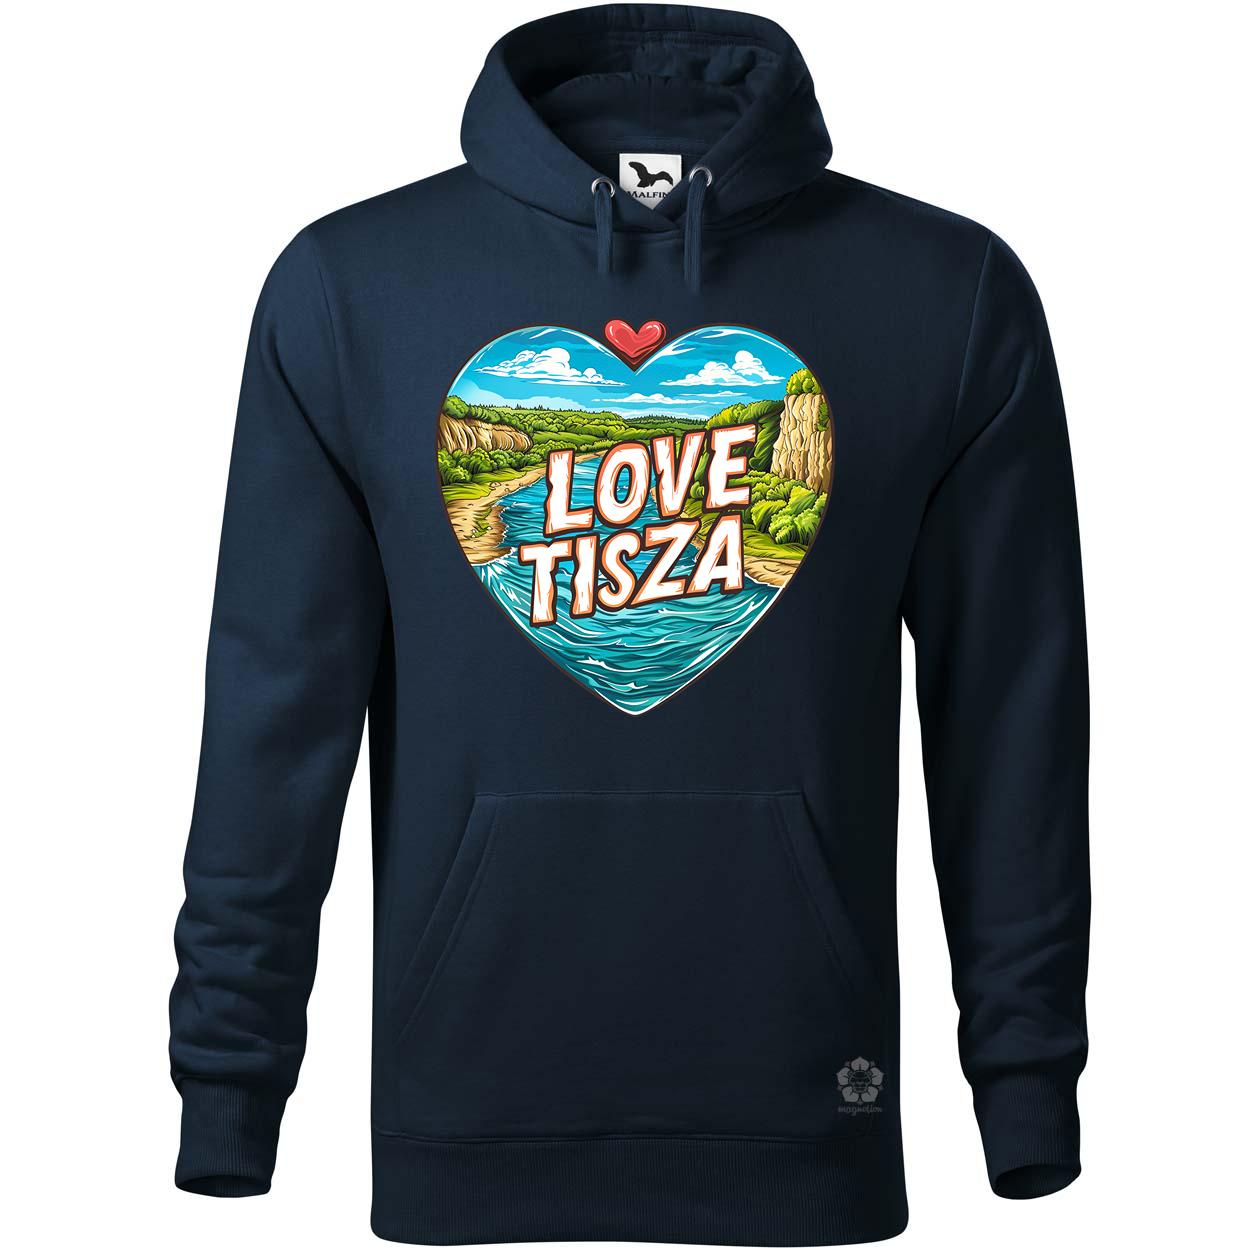 Love Tisza v8